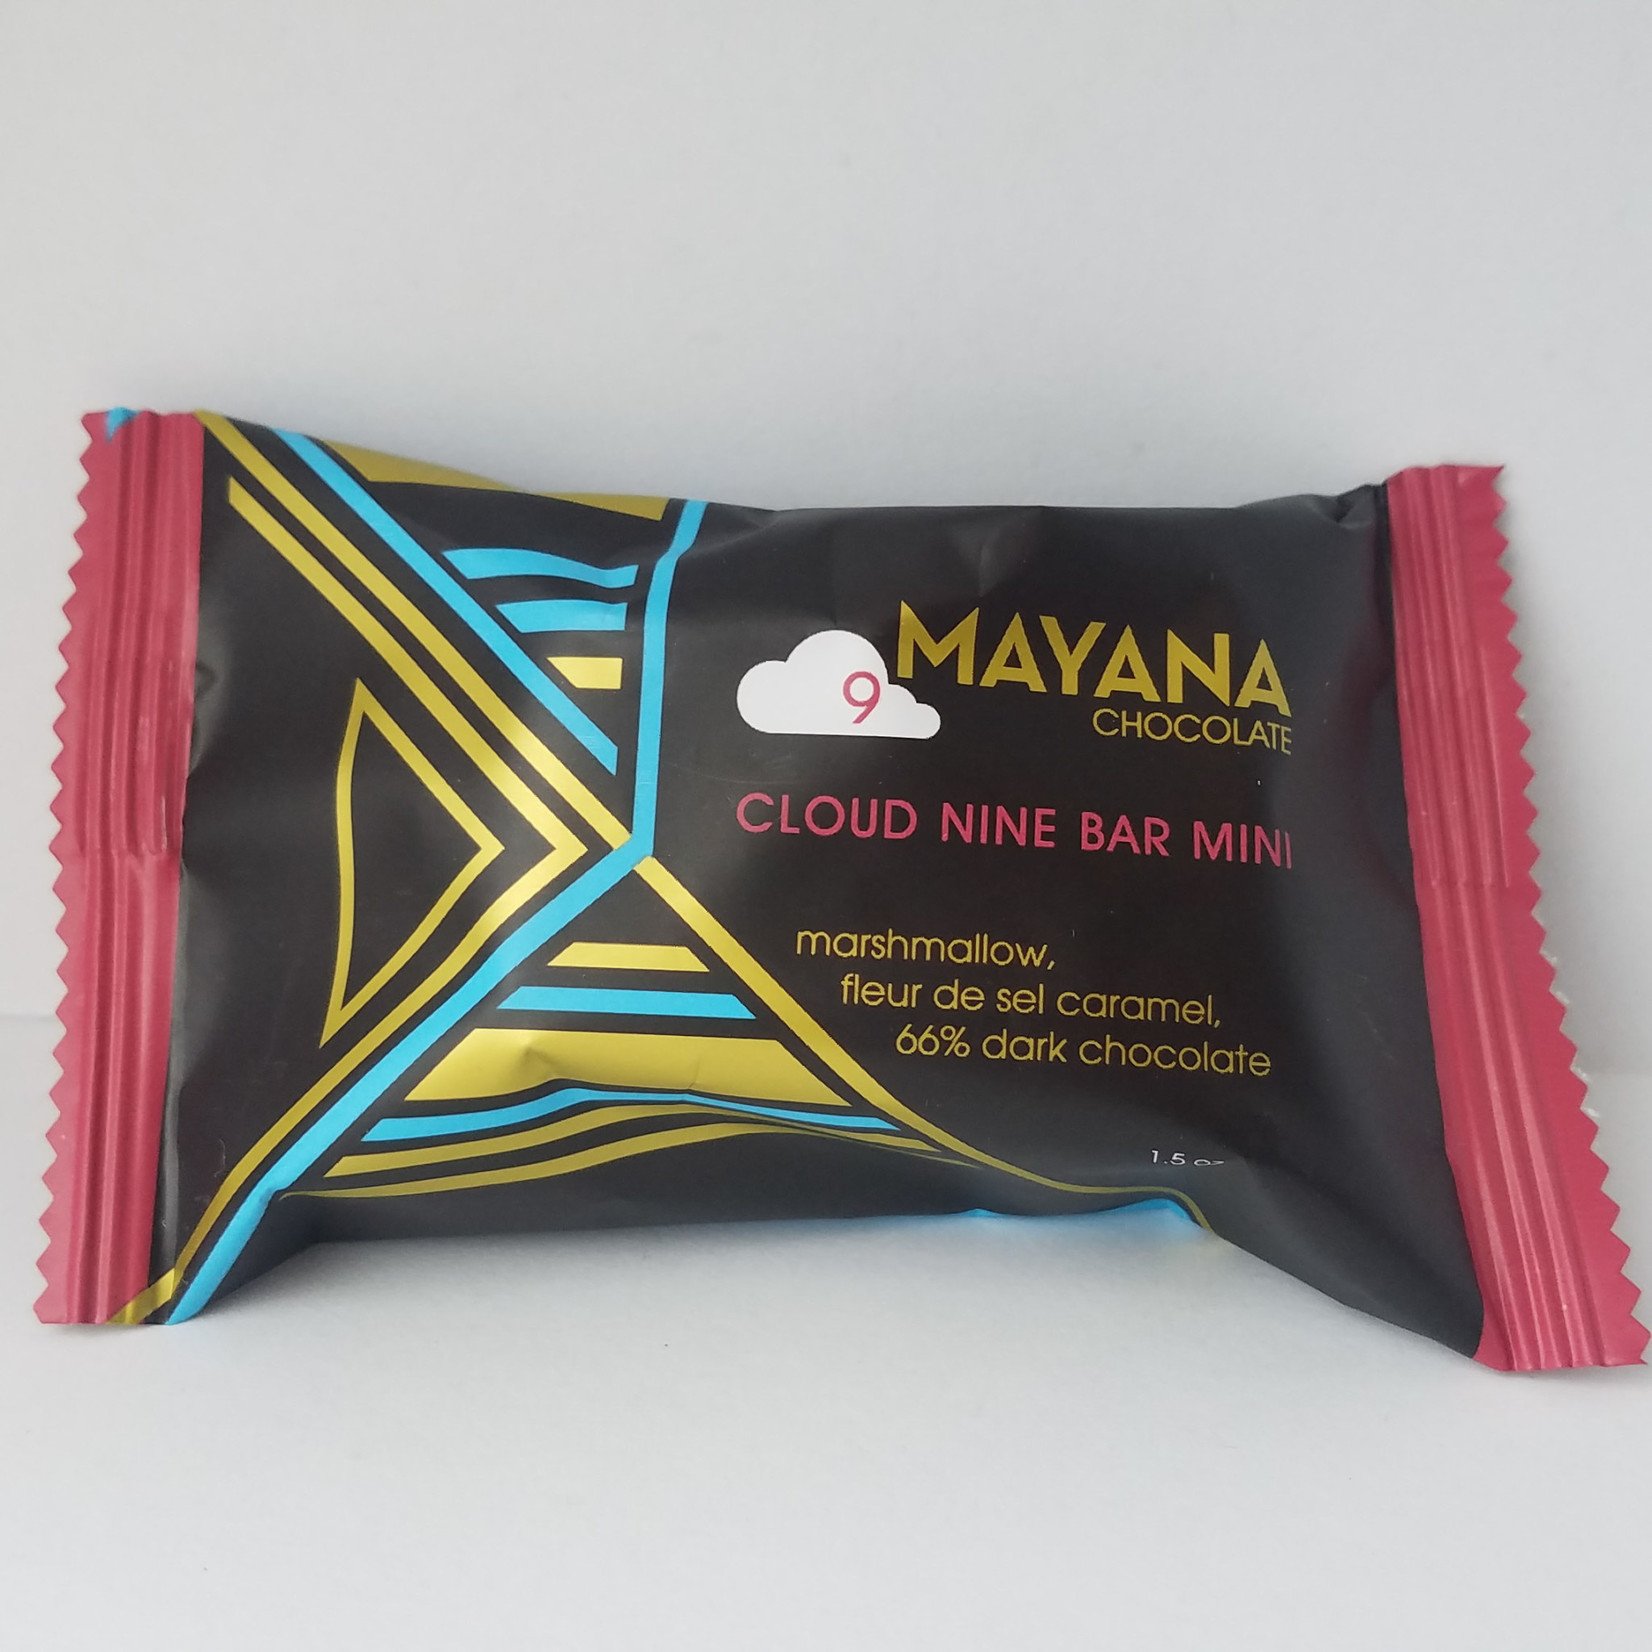 Mayana Chocolate Cloud 9 Mini Bar